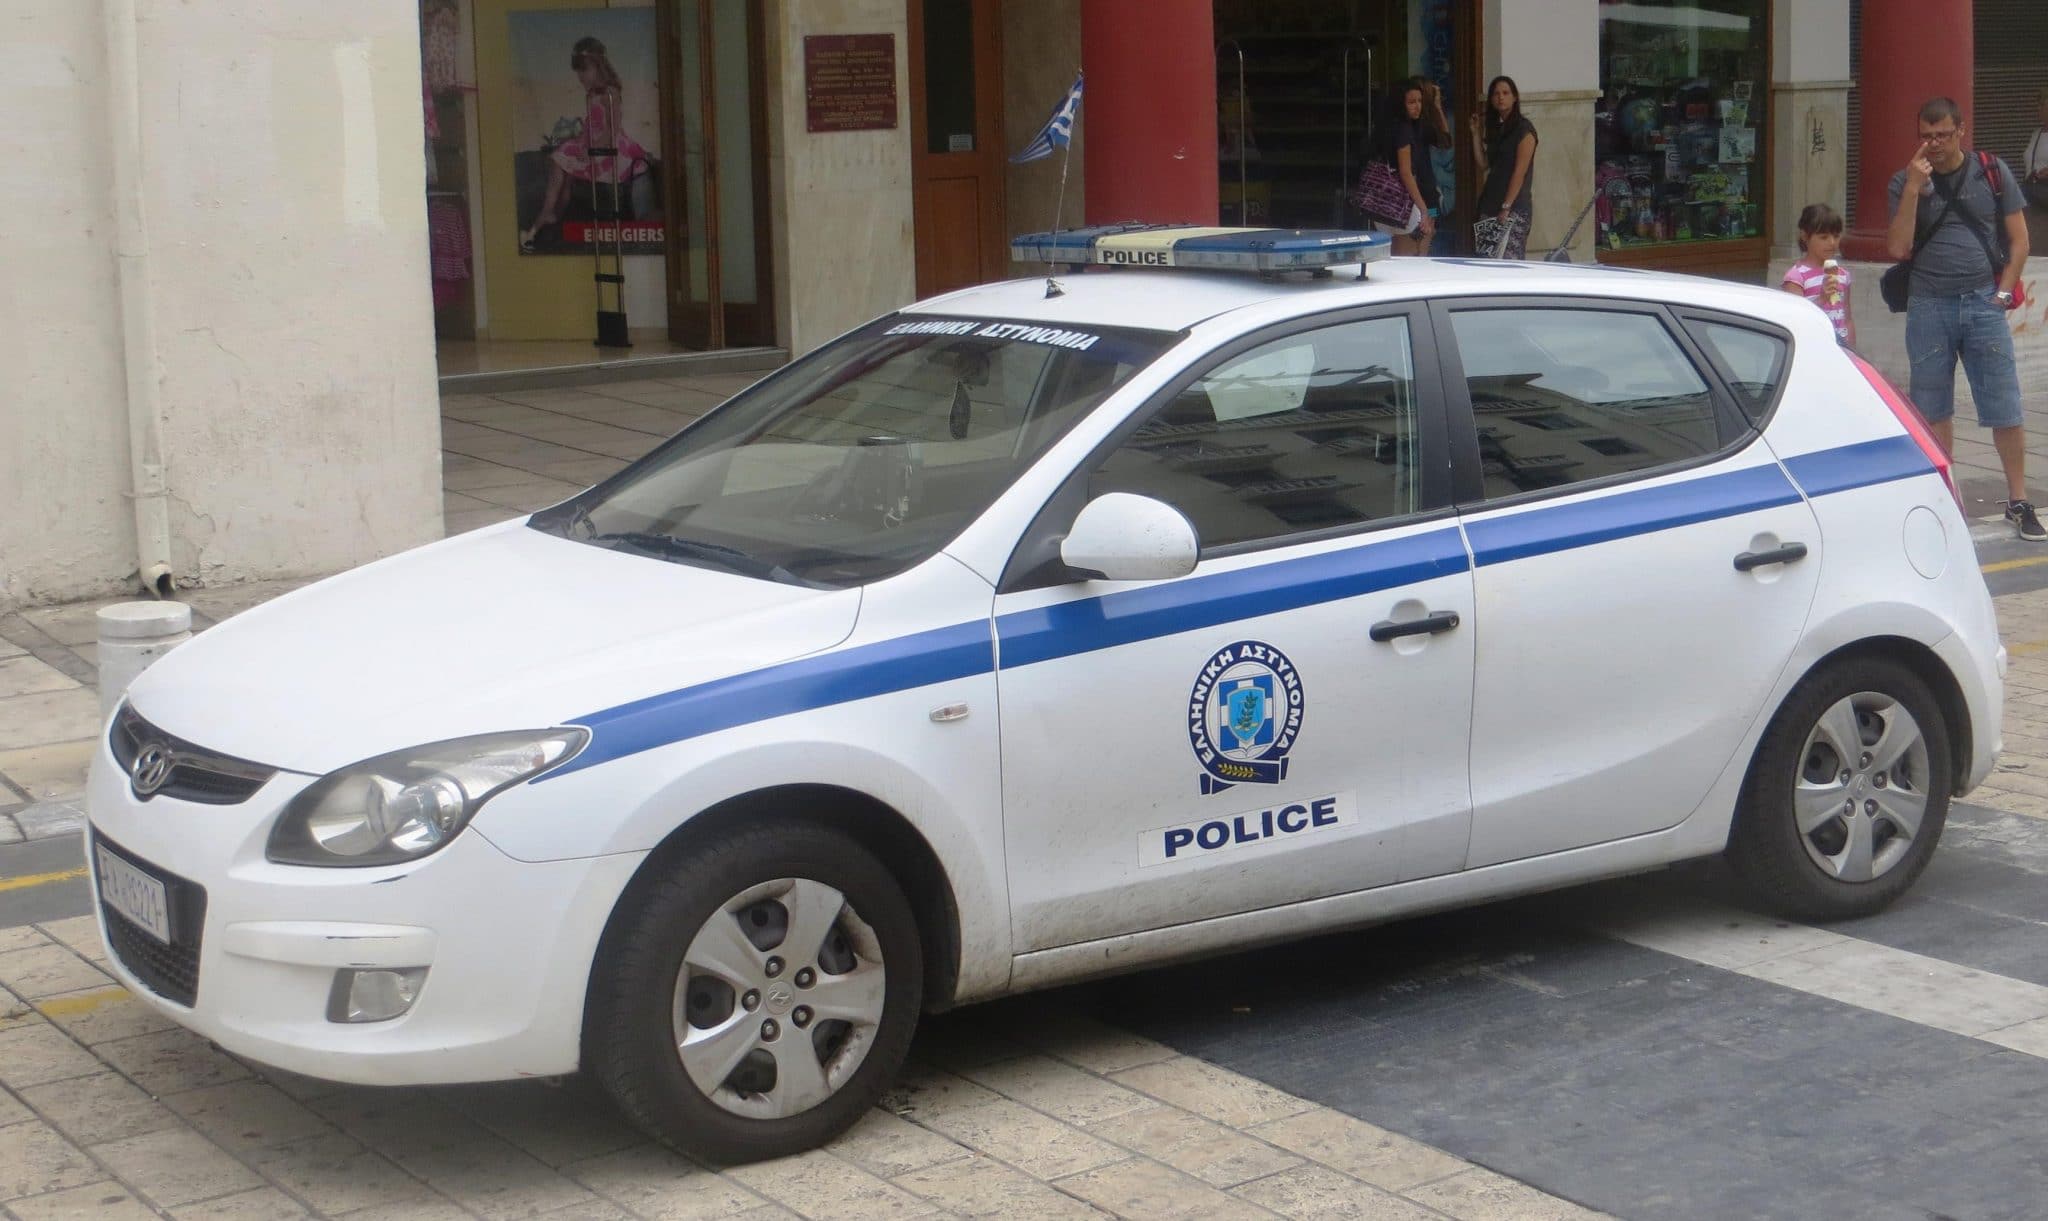 Атинската полиция издирва убиеца на 61-годишен българин, предава БНР“.
По първоначални